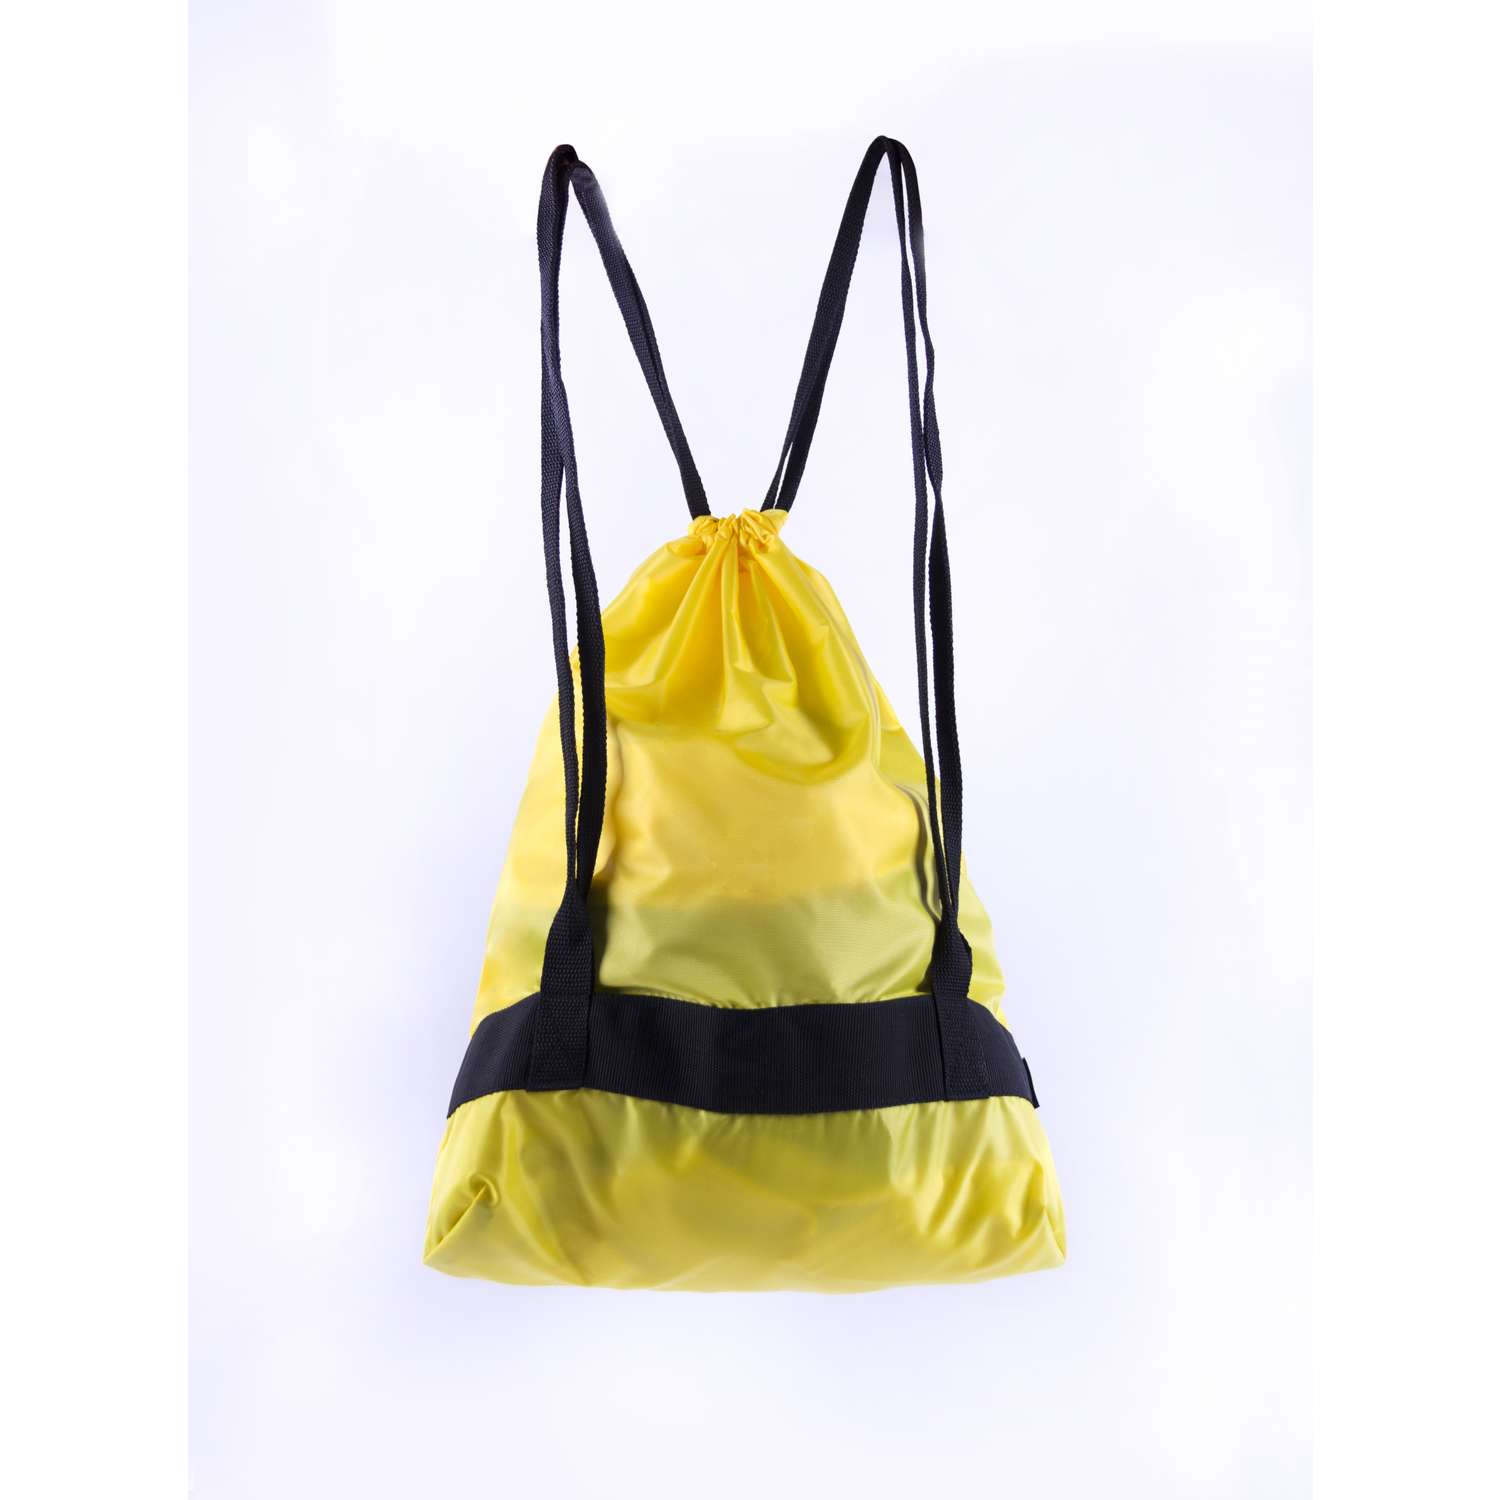 Мешок для сменных вещей Belon familia с карманом сеткой для мяча/ желтый ССМ-001-Ж - фото 2